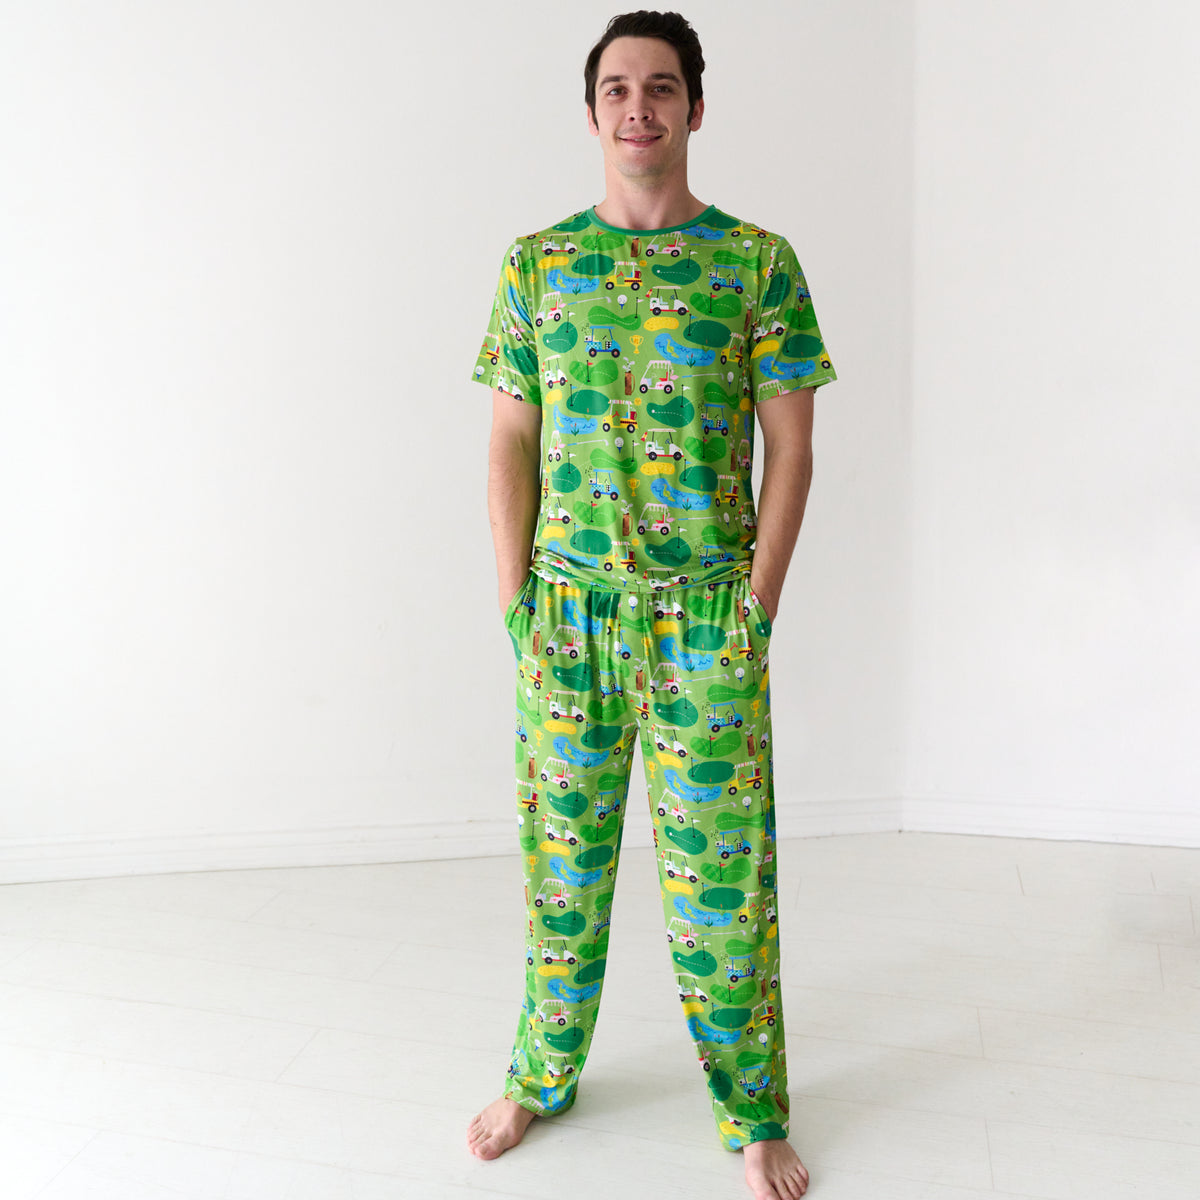 Fairway Fun Men's Short Sleeve Pajama Top - Little Sleepies